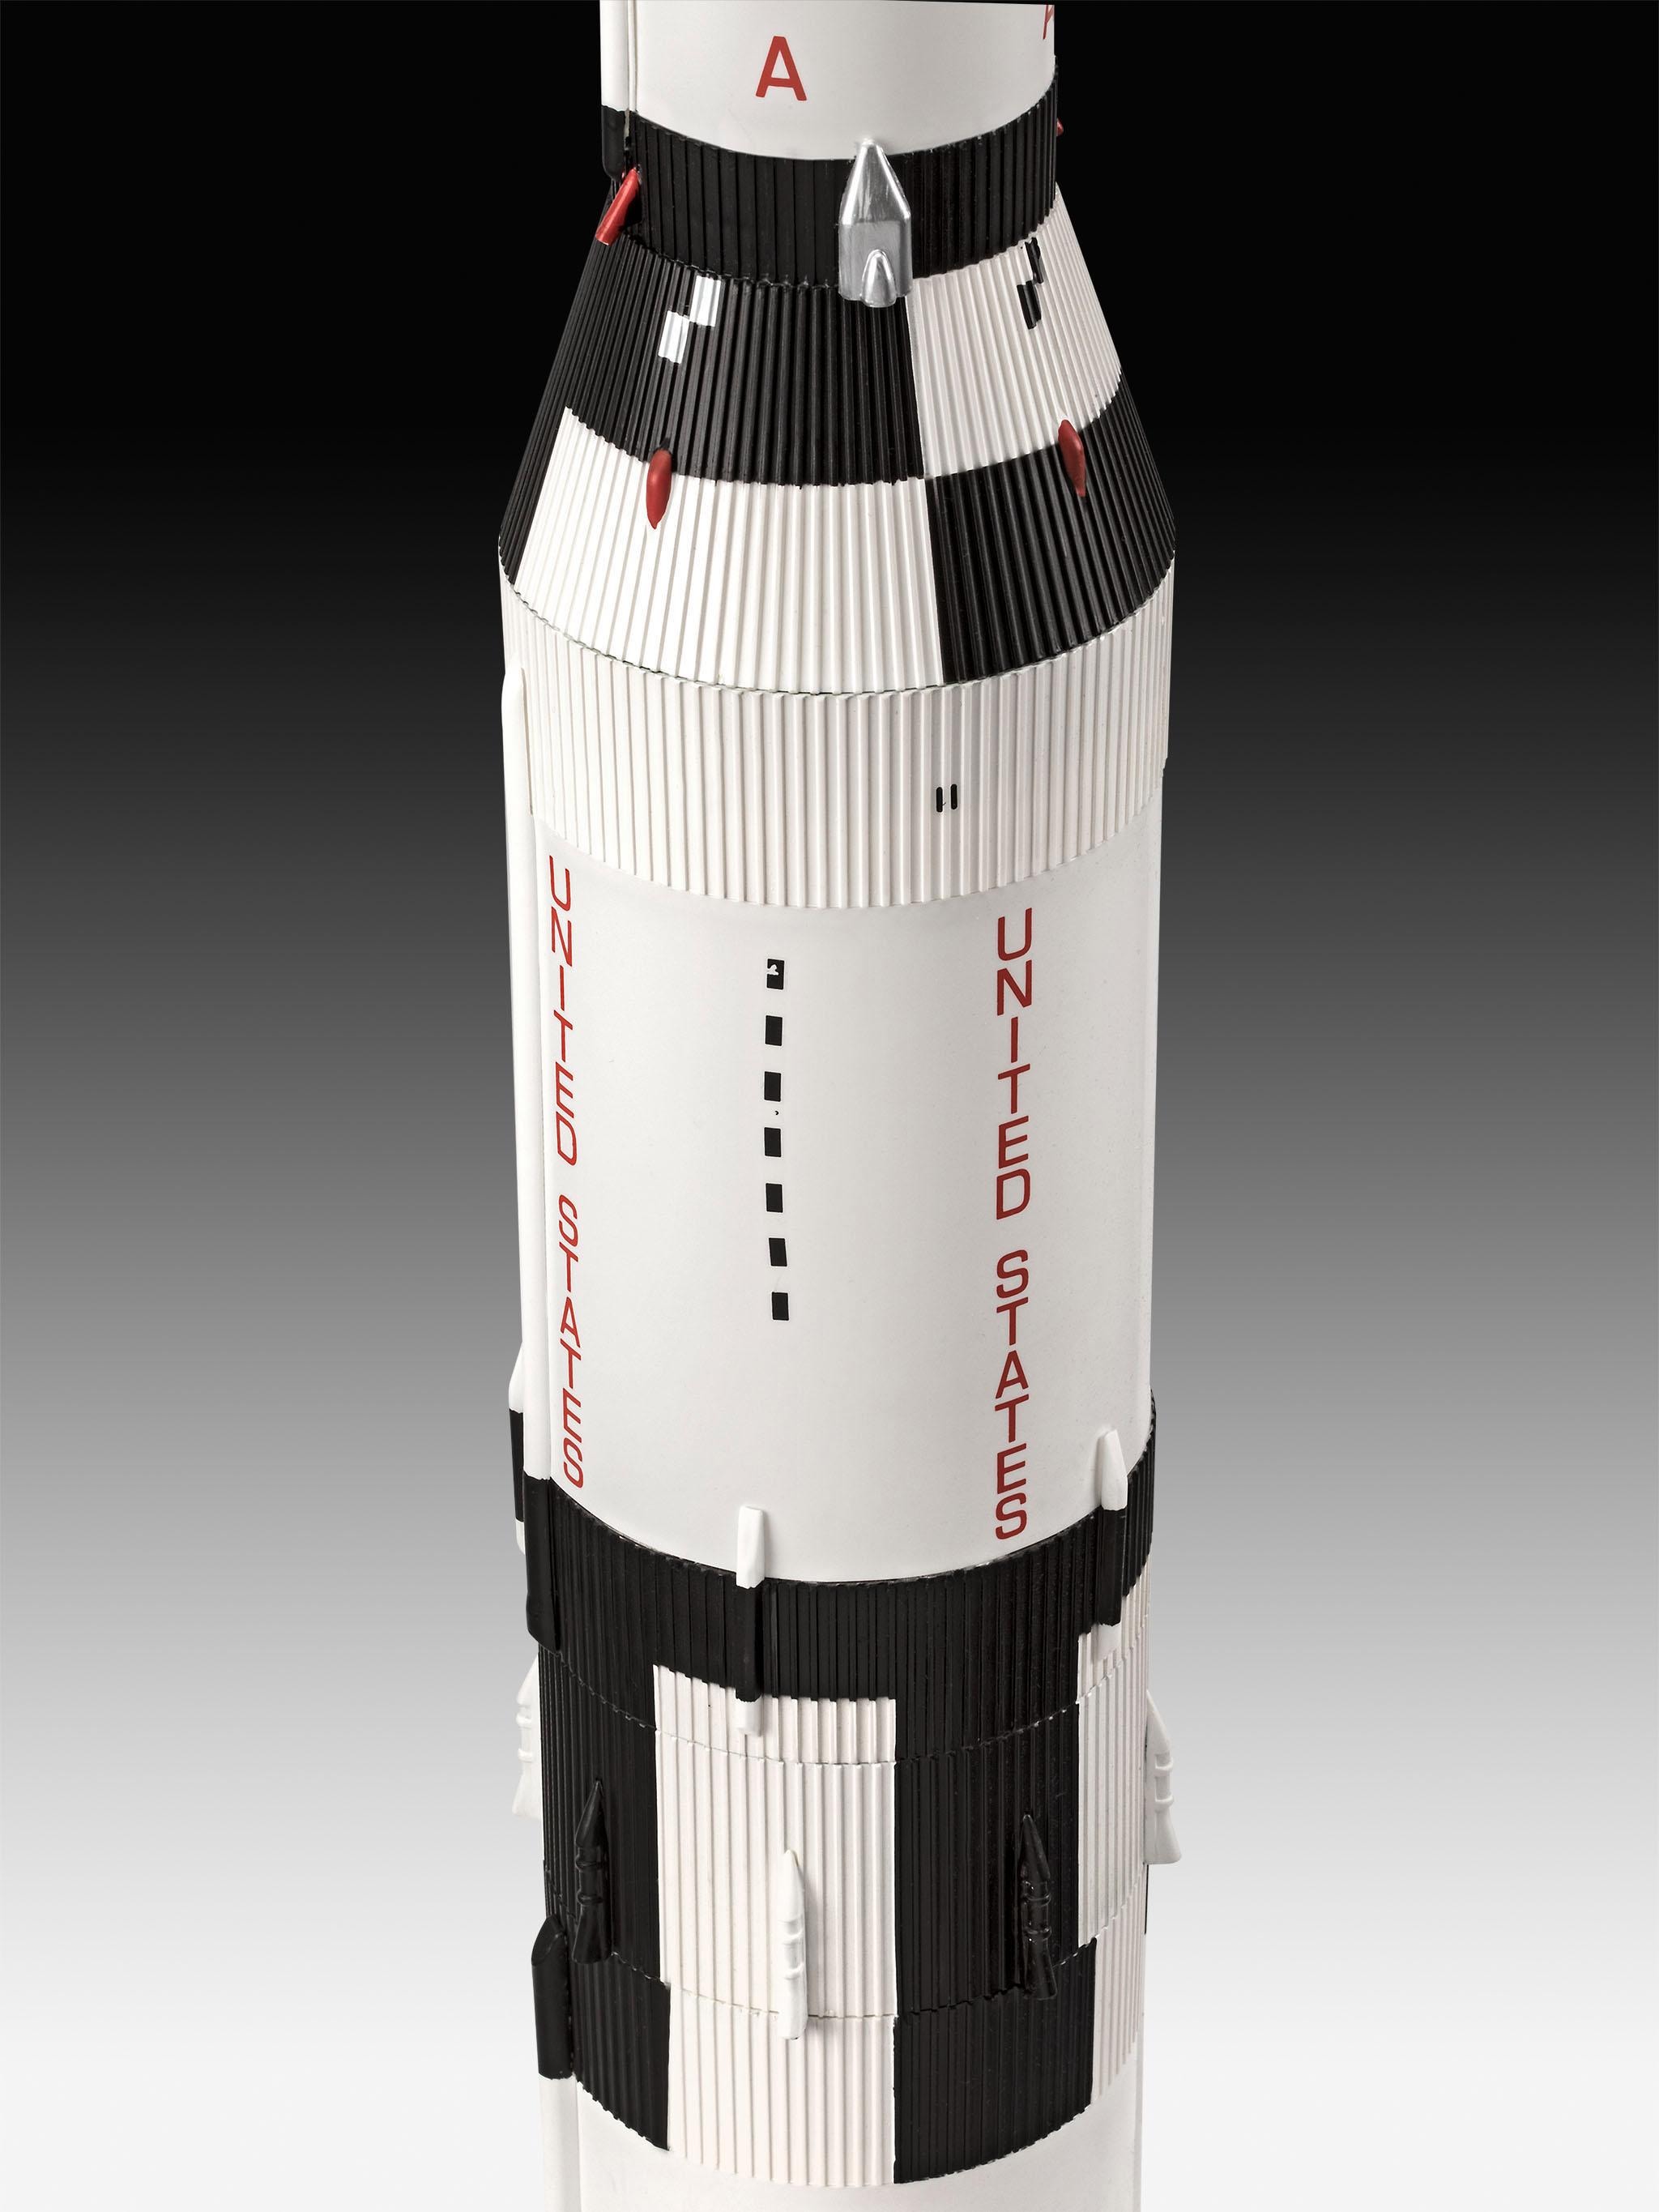 Revell® Modellbausatz »Apollo 11 Saturn V Rocket«, 1:96, Jubiläumsset mit Basis-Zubehör; Made in Europe